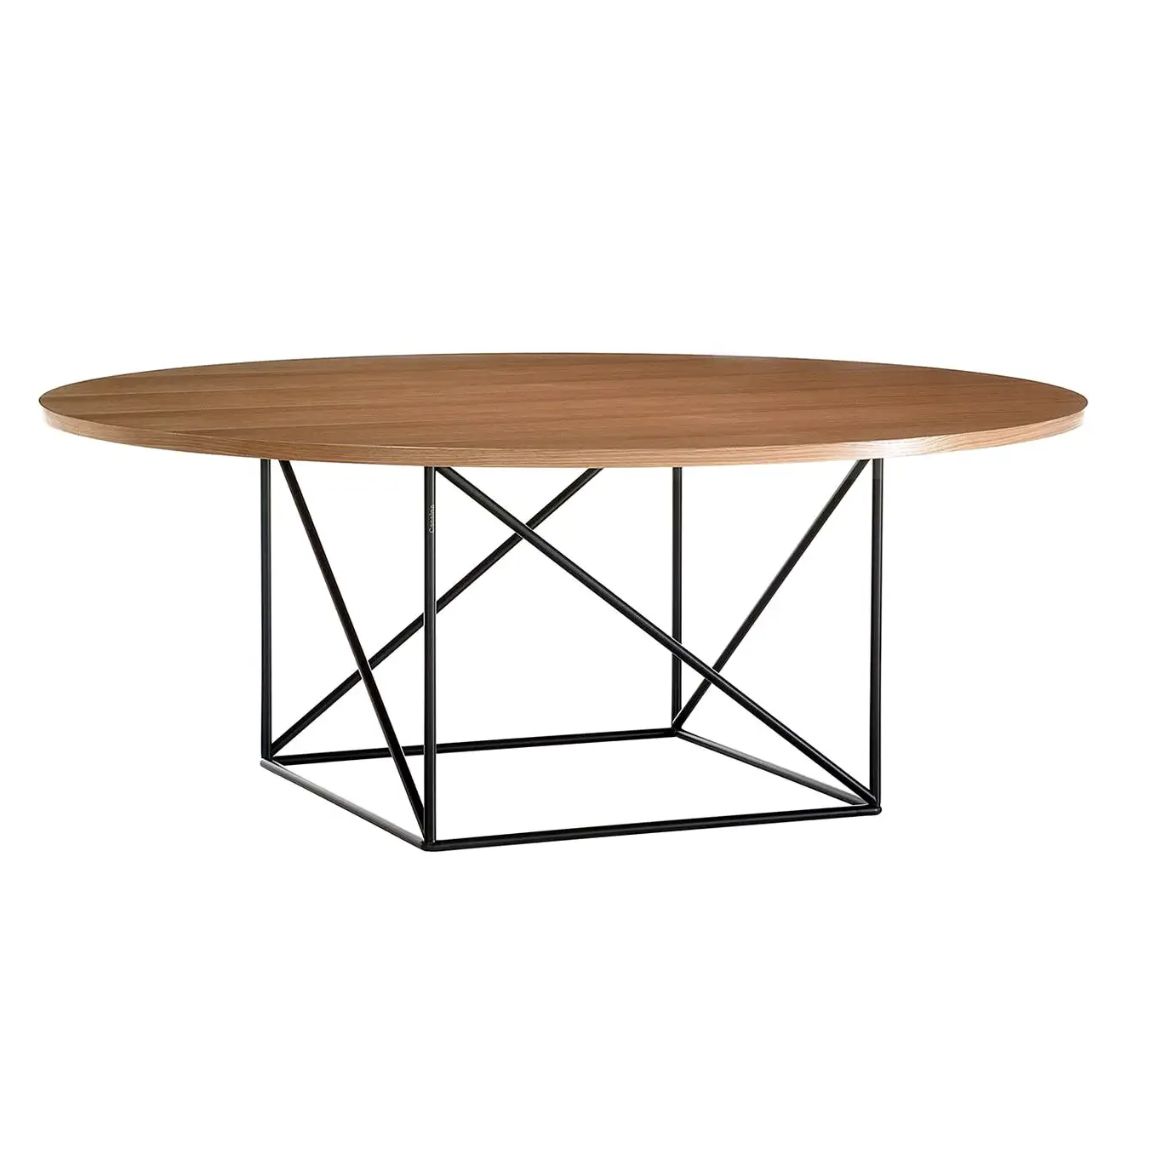 Le Corbusier, table en bois et acier